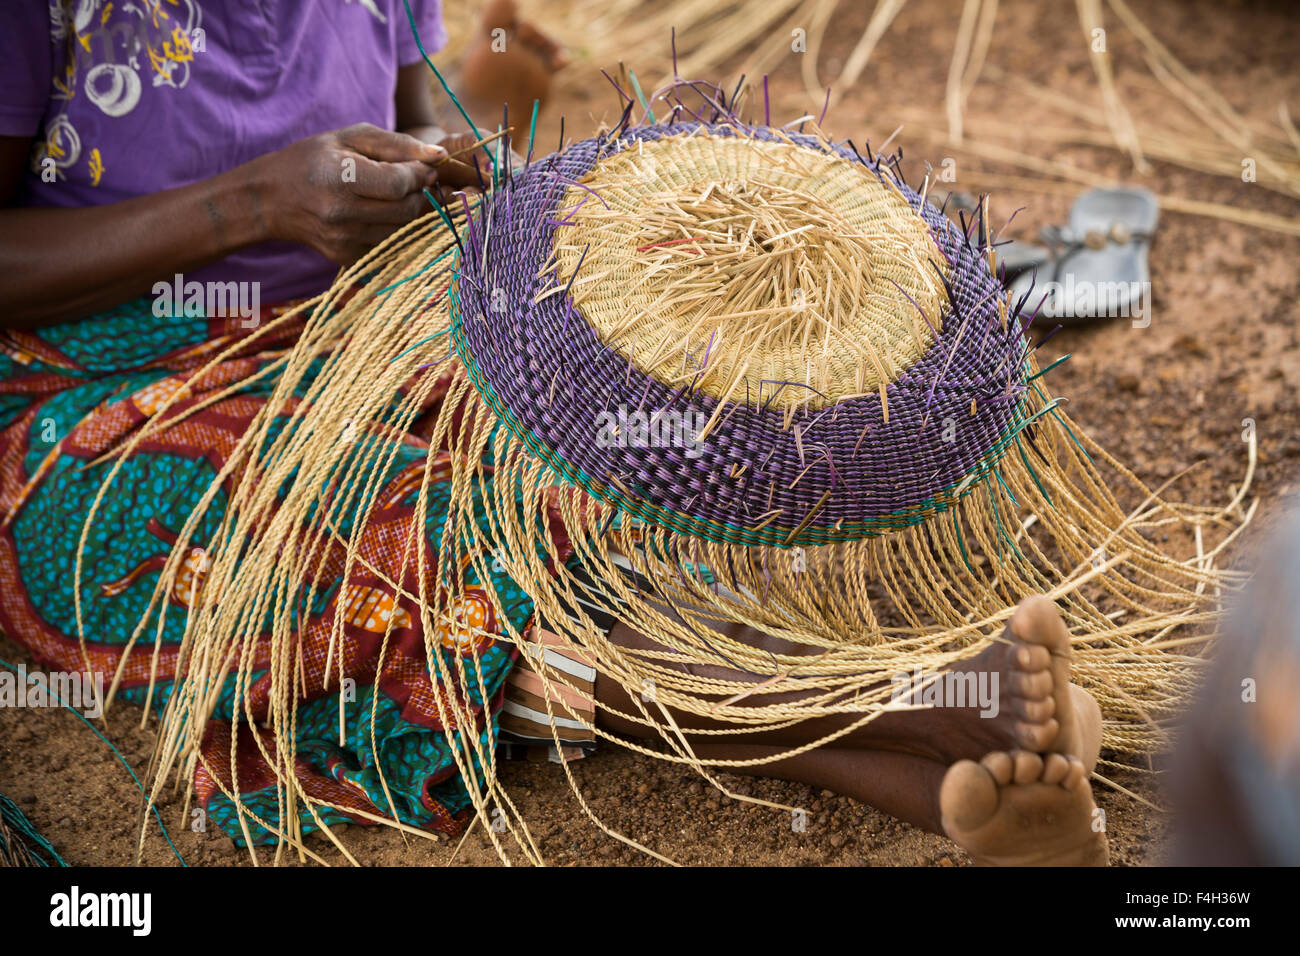 Le commerce équitable, des paniers de paille sont tissés par les femmes de Amongtaaba Vanniers Groupe dans le district Bolgatanga (Ghana). Banque D'Images